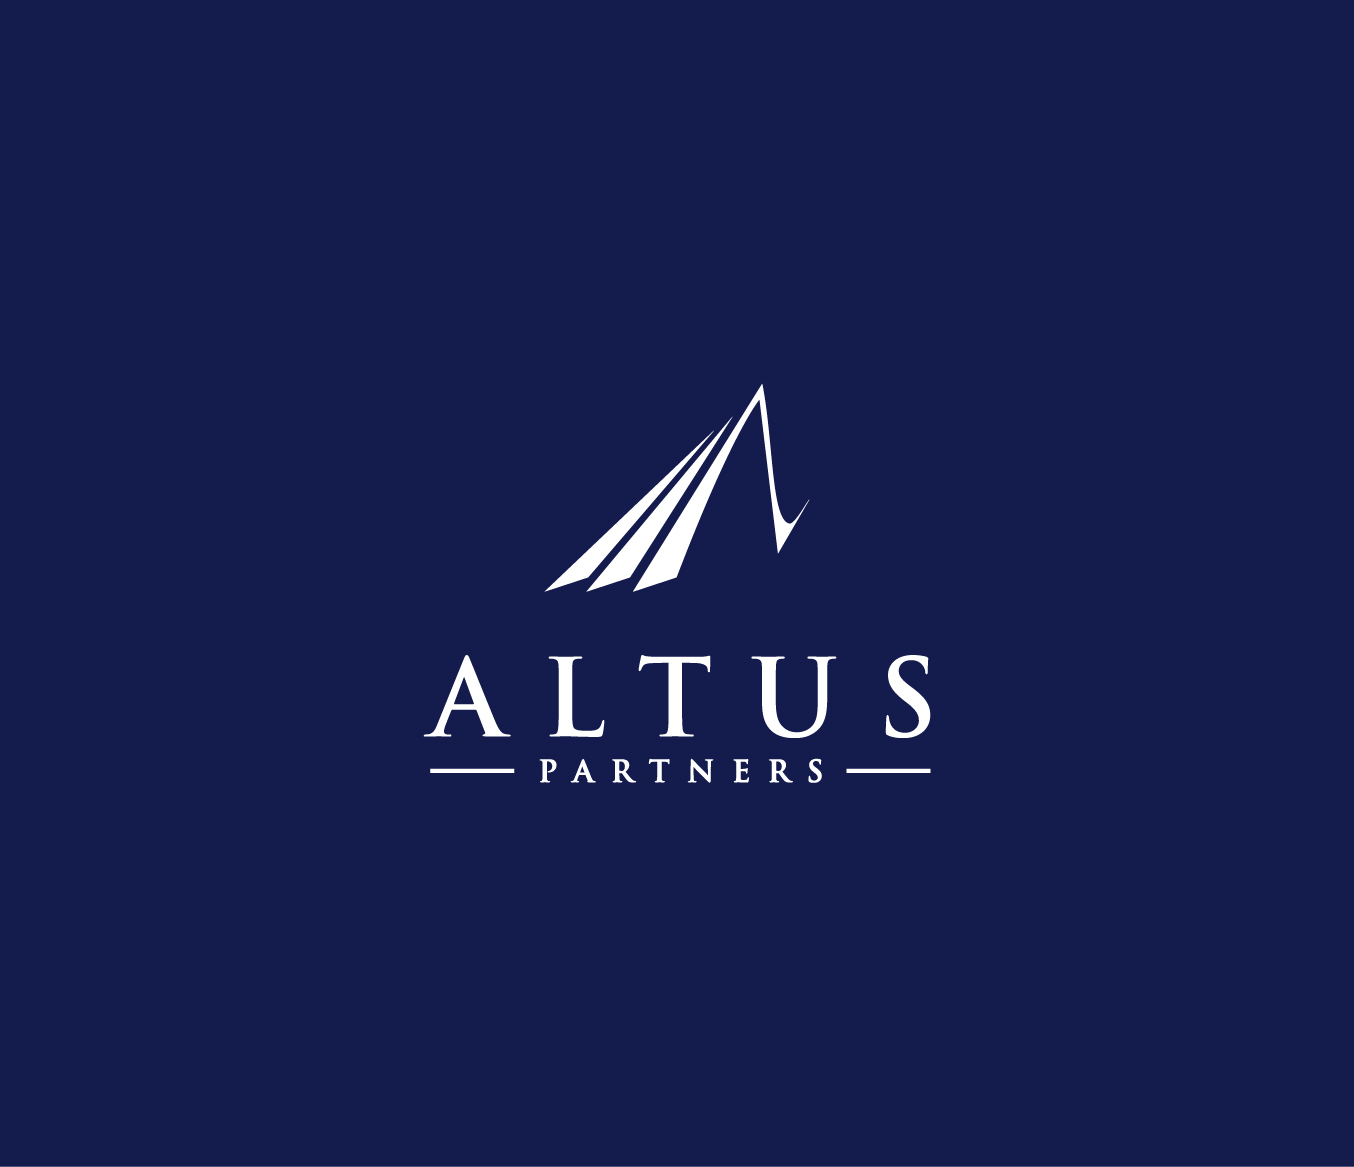 Altus Partners Blue Background White Logo